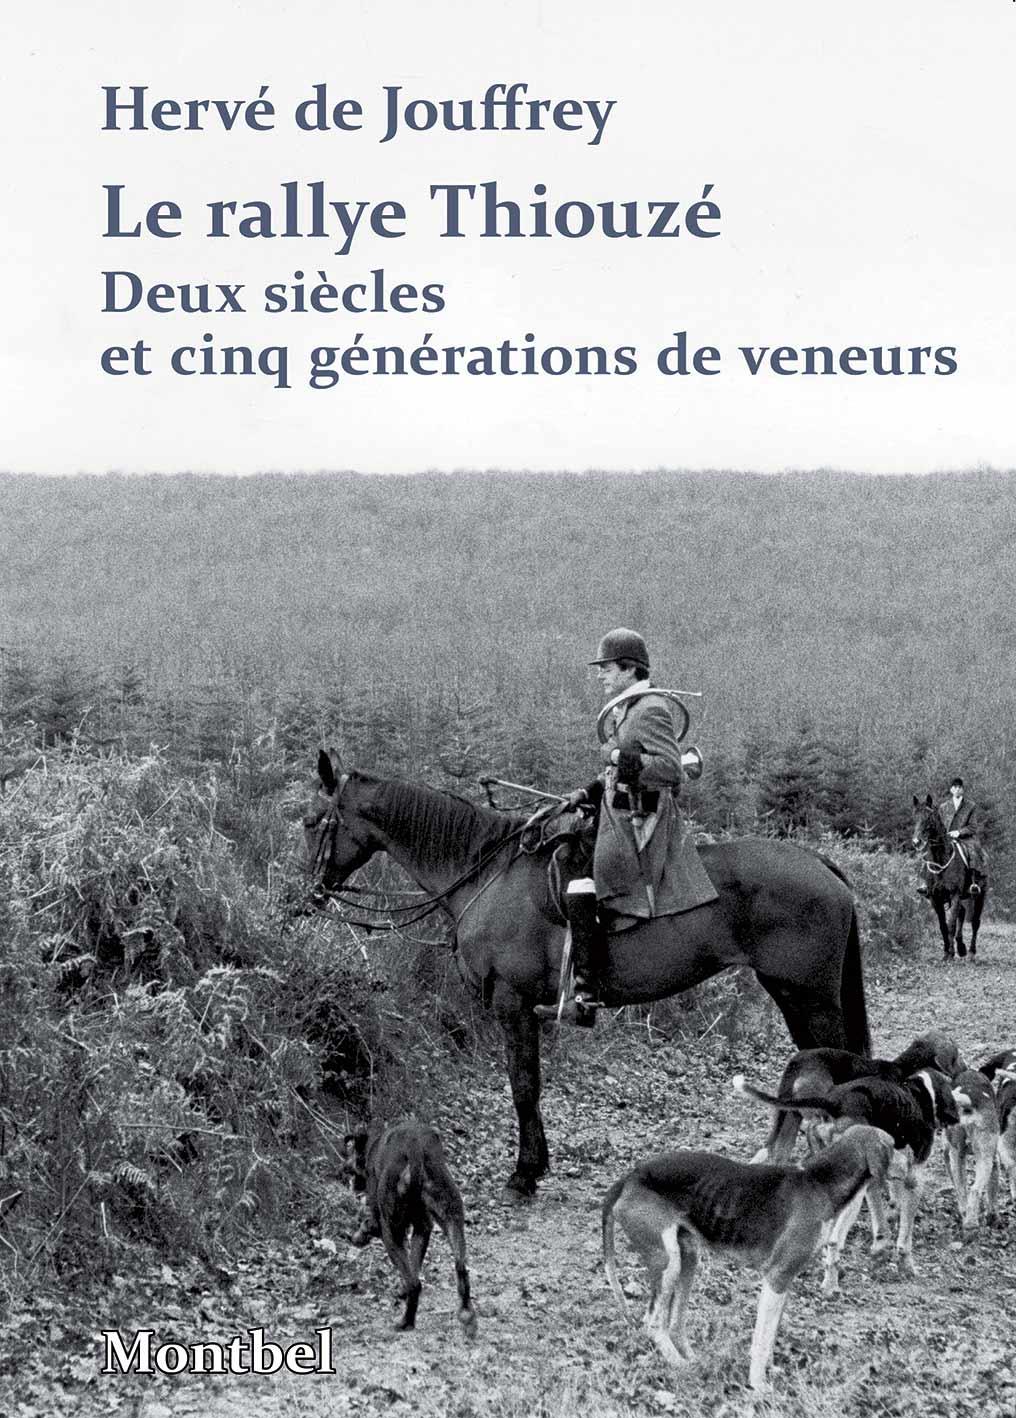 Le rallye Thiouzé. Deux siècles et cinq générations de veneurs de Hervé de Jouffrey